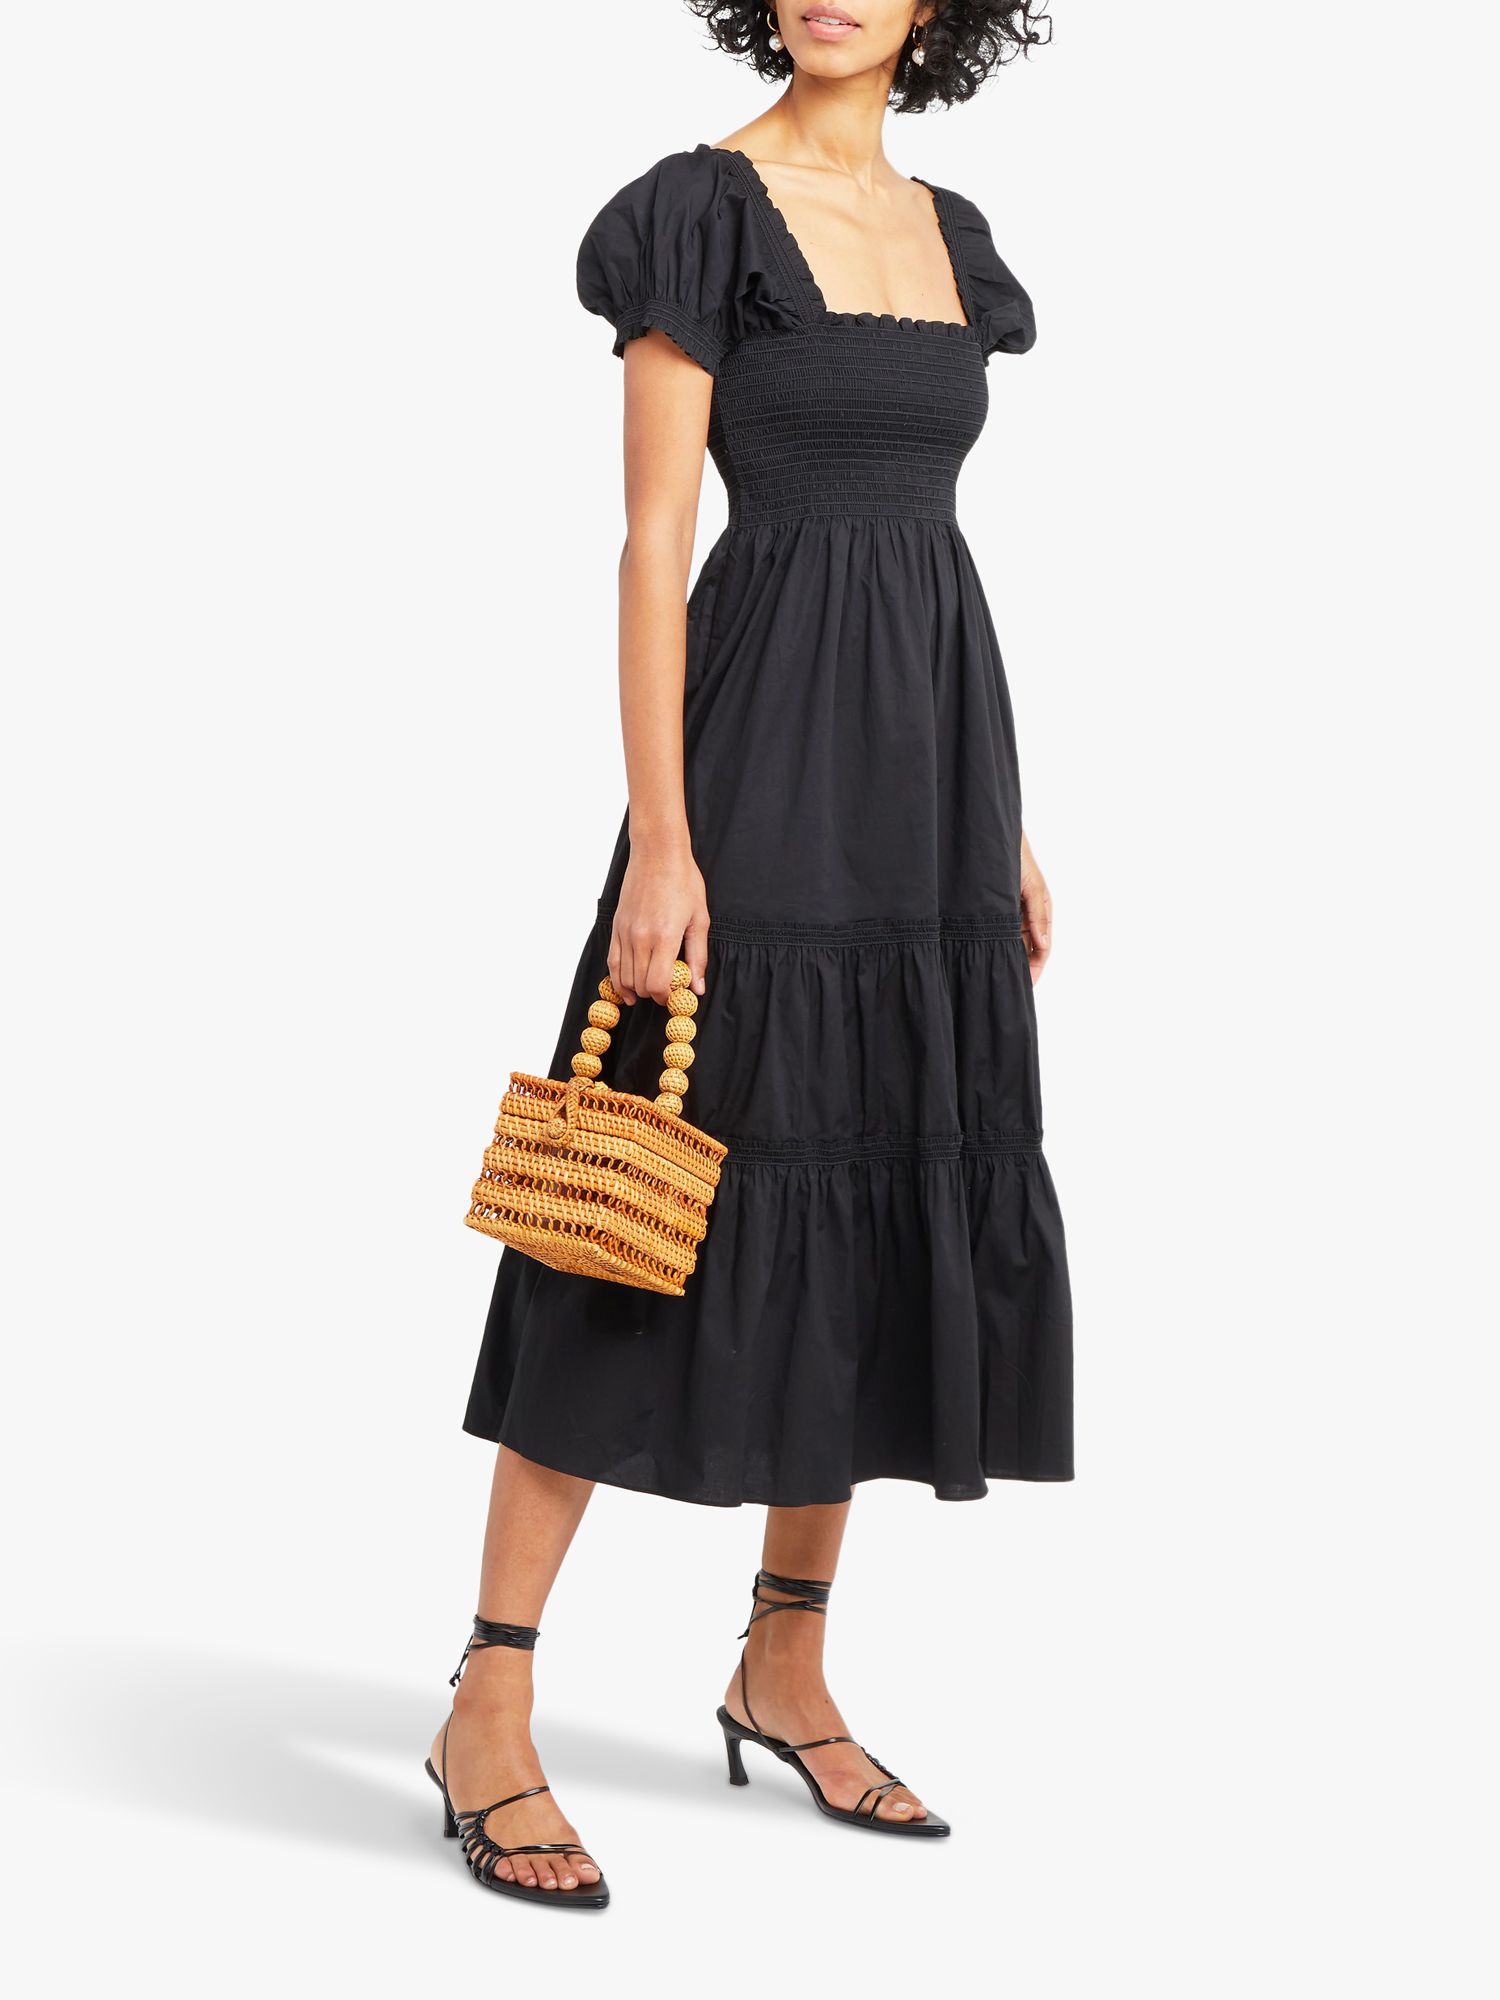 o.p.t Daphne Tiered Midi Dress, Black, S